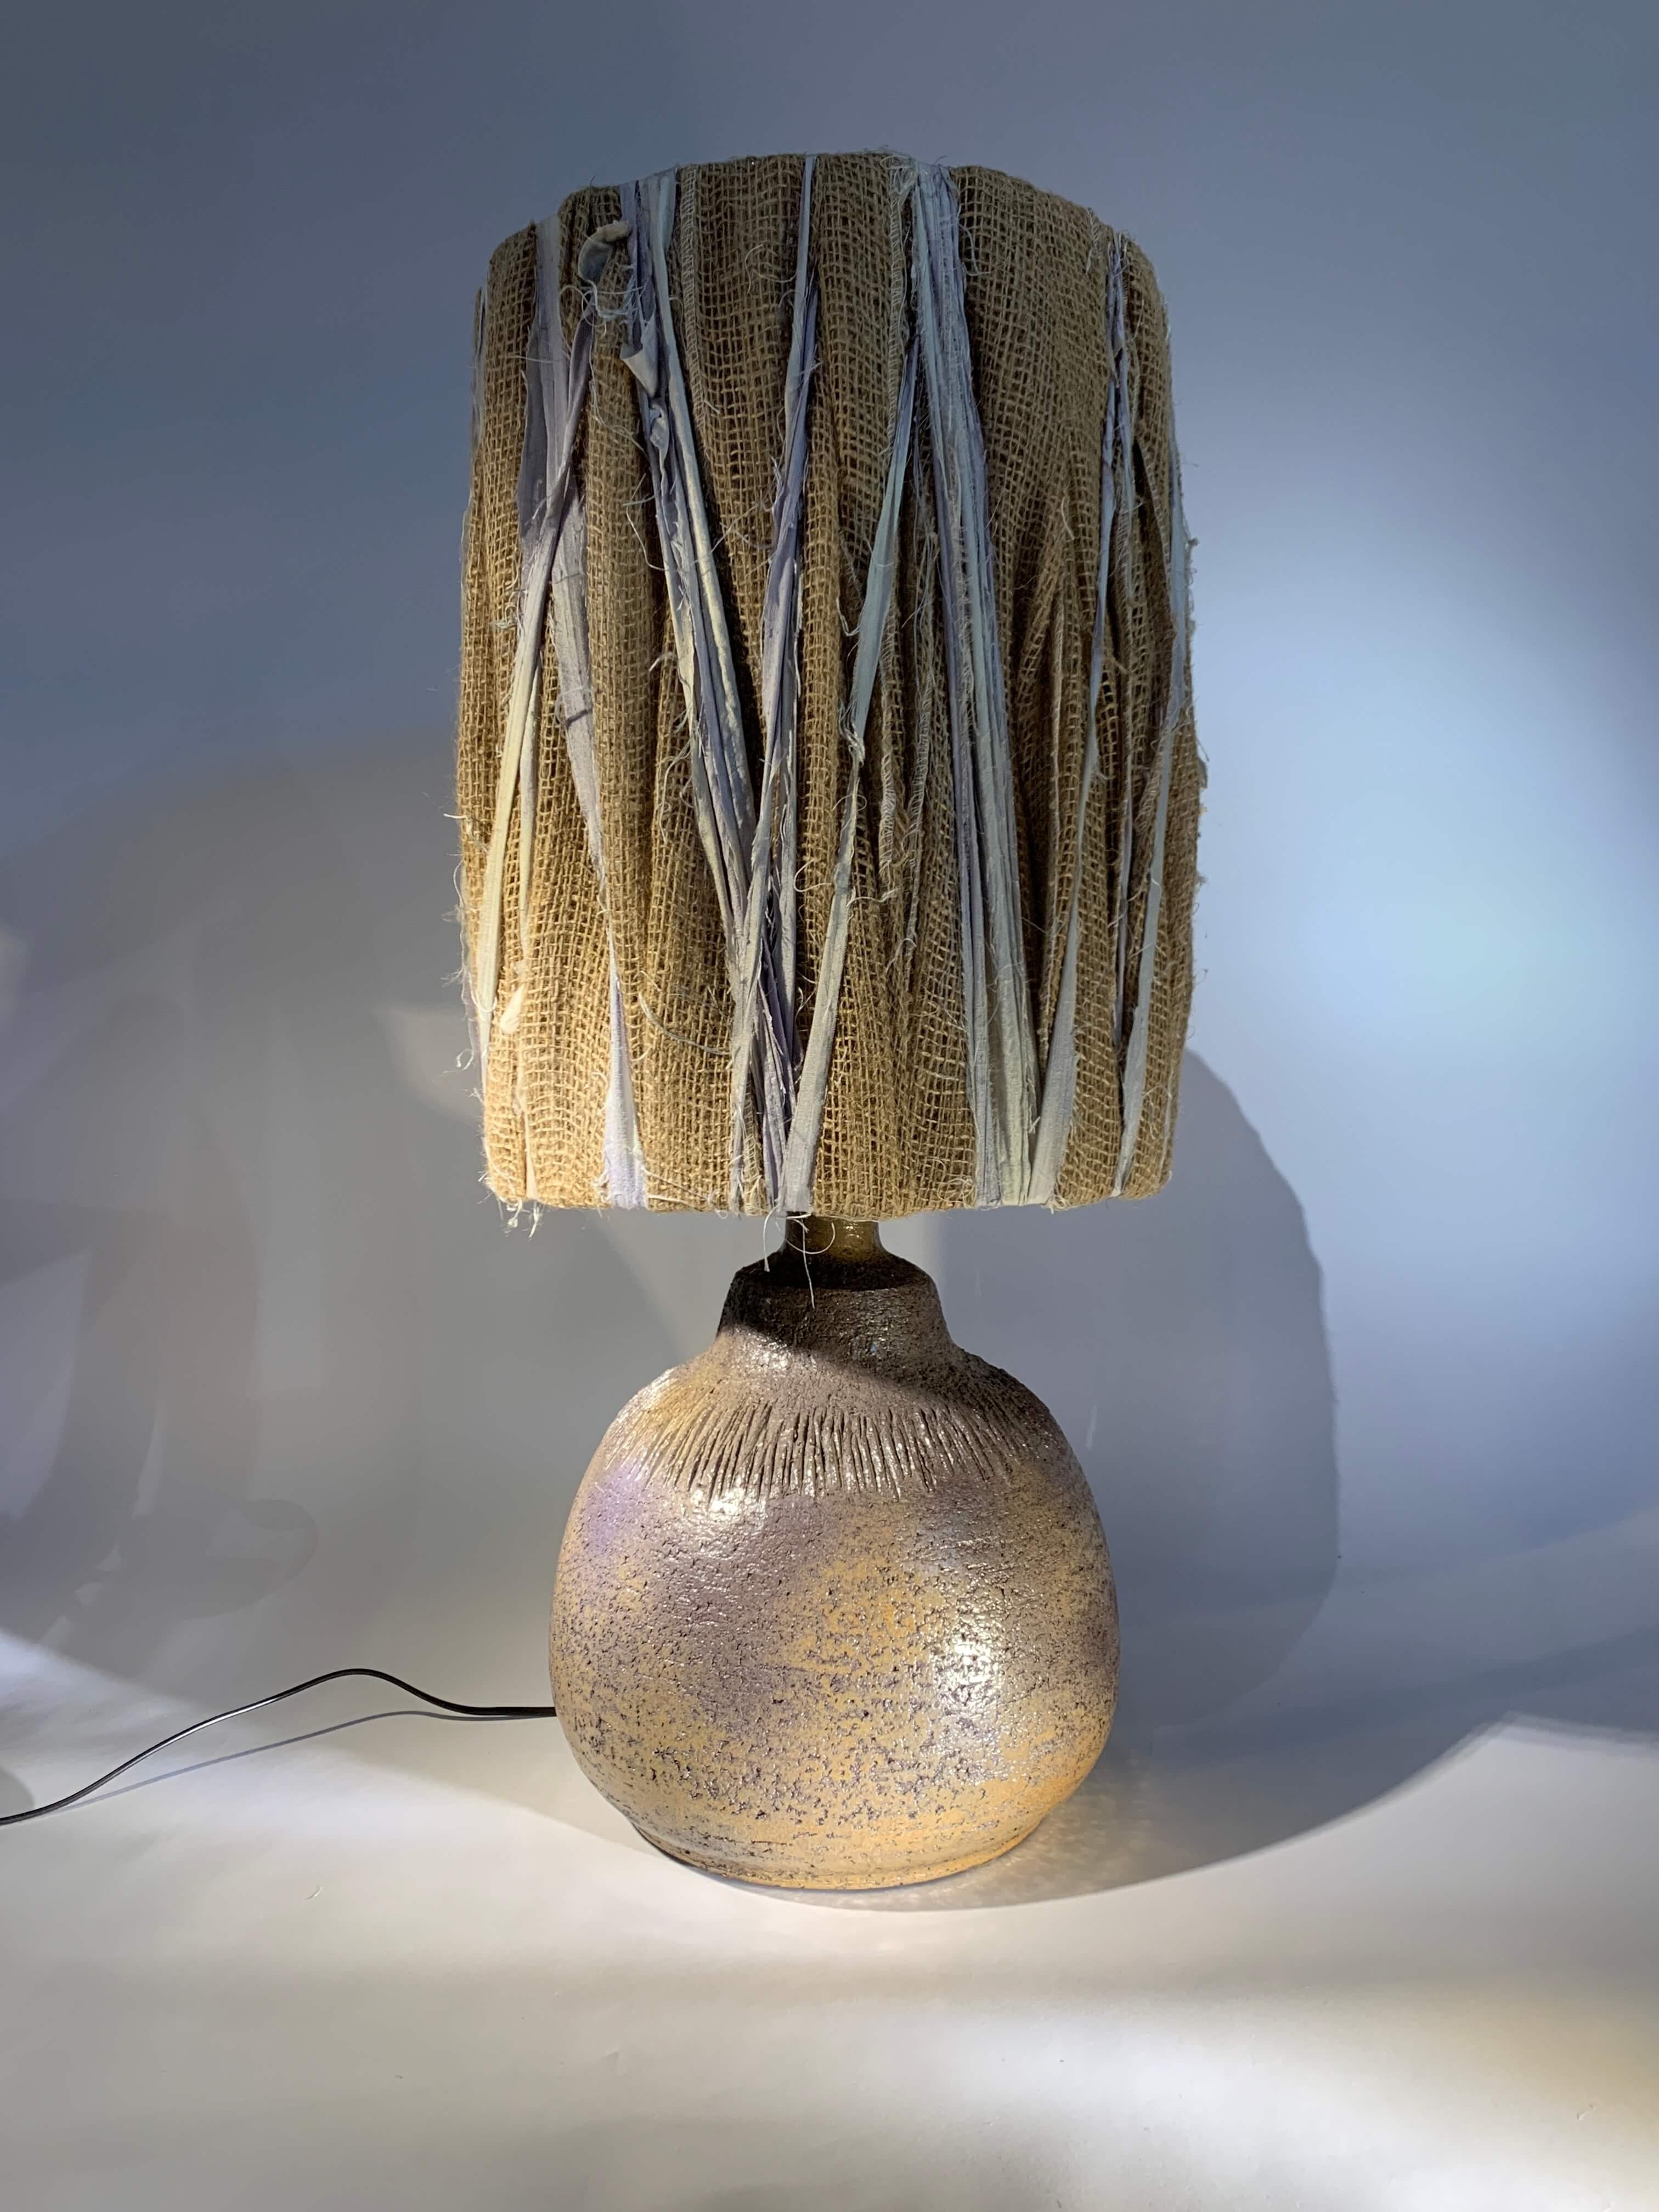 Außergewöhnliche französische Keramik-Tischlampe von Huguette Bessone.
Lampenfuß aus Schamotteerde, runder und großzügiger Korpus mit eingeschnittenem Dekor.
Diese Keramik, deren Form und Dekoration für Huguette Bessone ungewöhnlich sind, ist auch